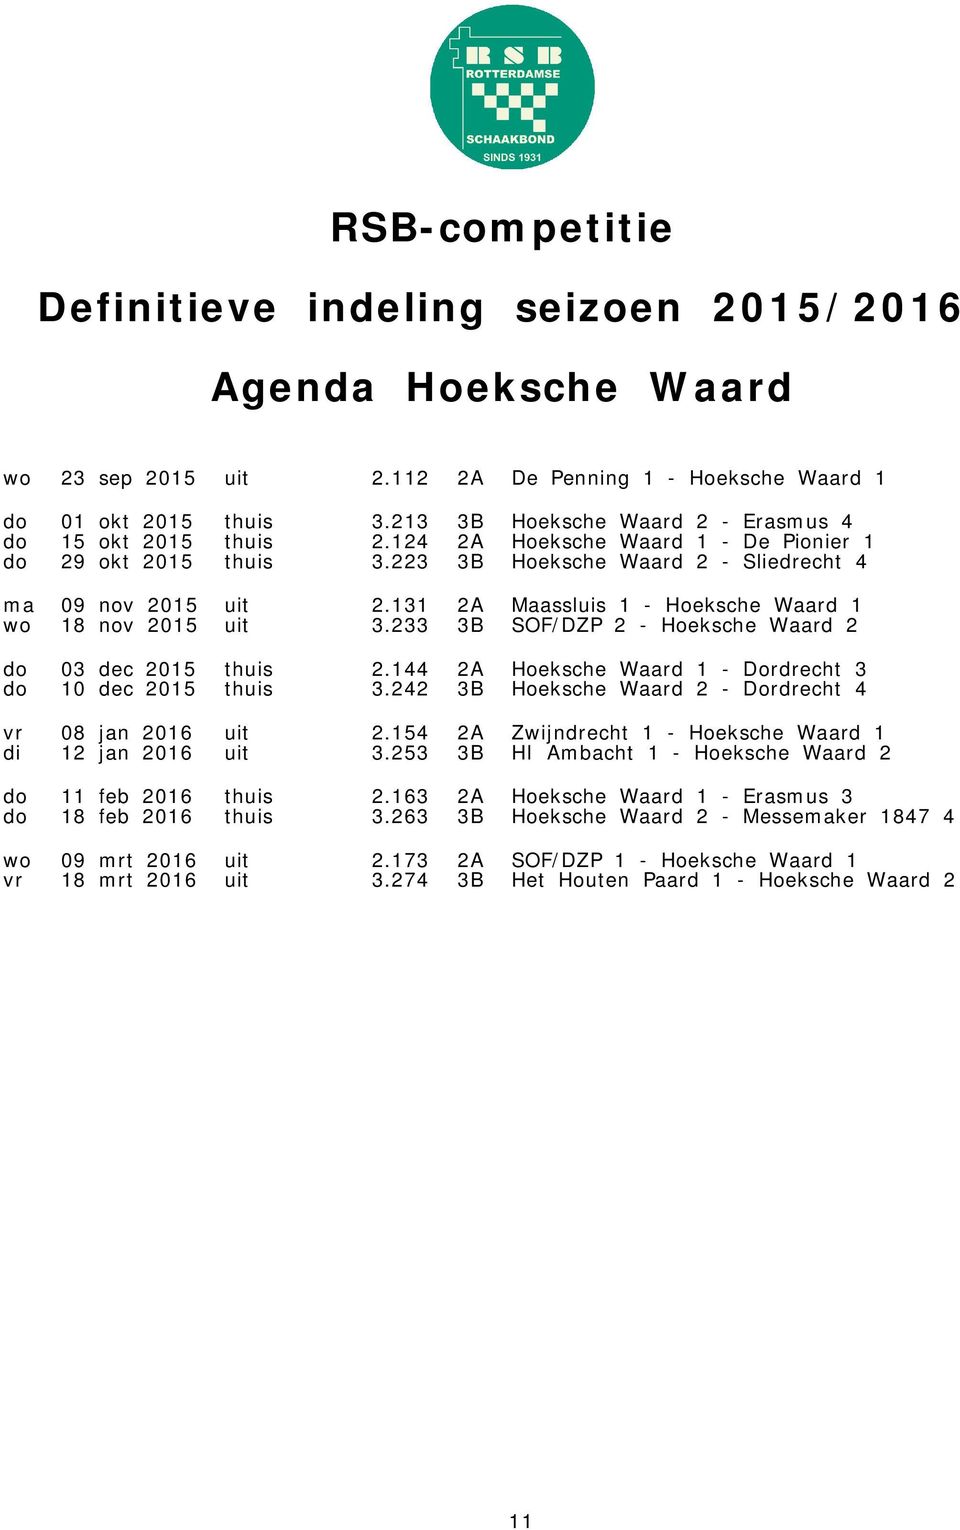 233 3B SOF/DZP 2 - Hoeksche Waard 2 do 03 dec 2015 thuis 2.144 2A Hoeksche Waard 1 - Dordrecht 3 do 10 dec 2015 thuis 3.242 3B Hoeksche Waard 2 - Dordrecht 4 vr 08 jan 2016 uit 2.